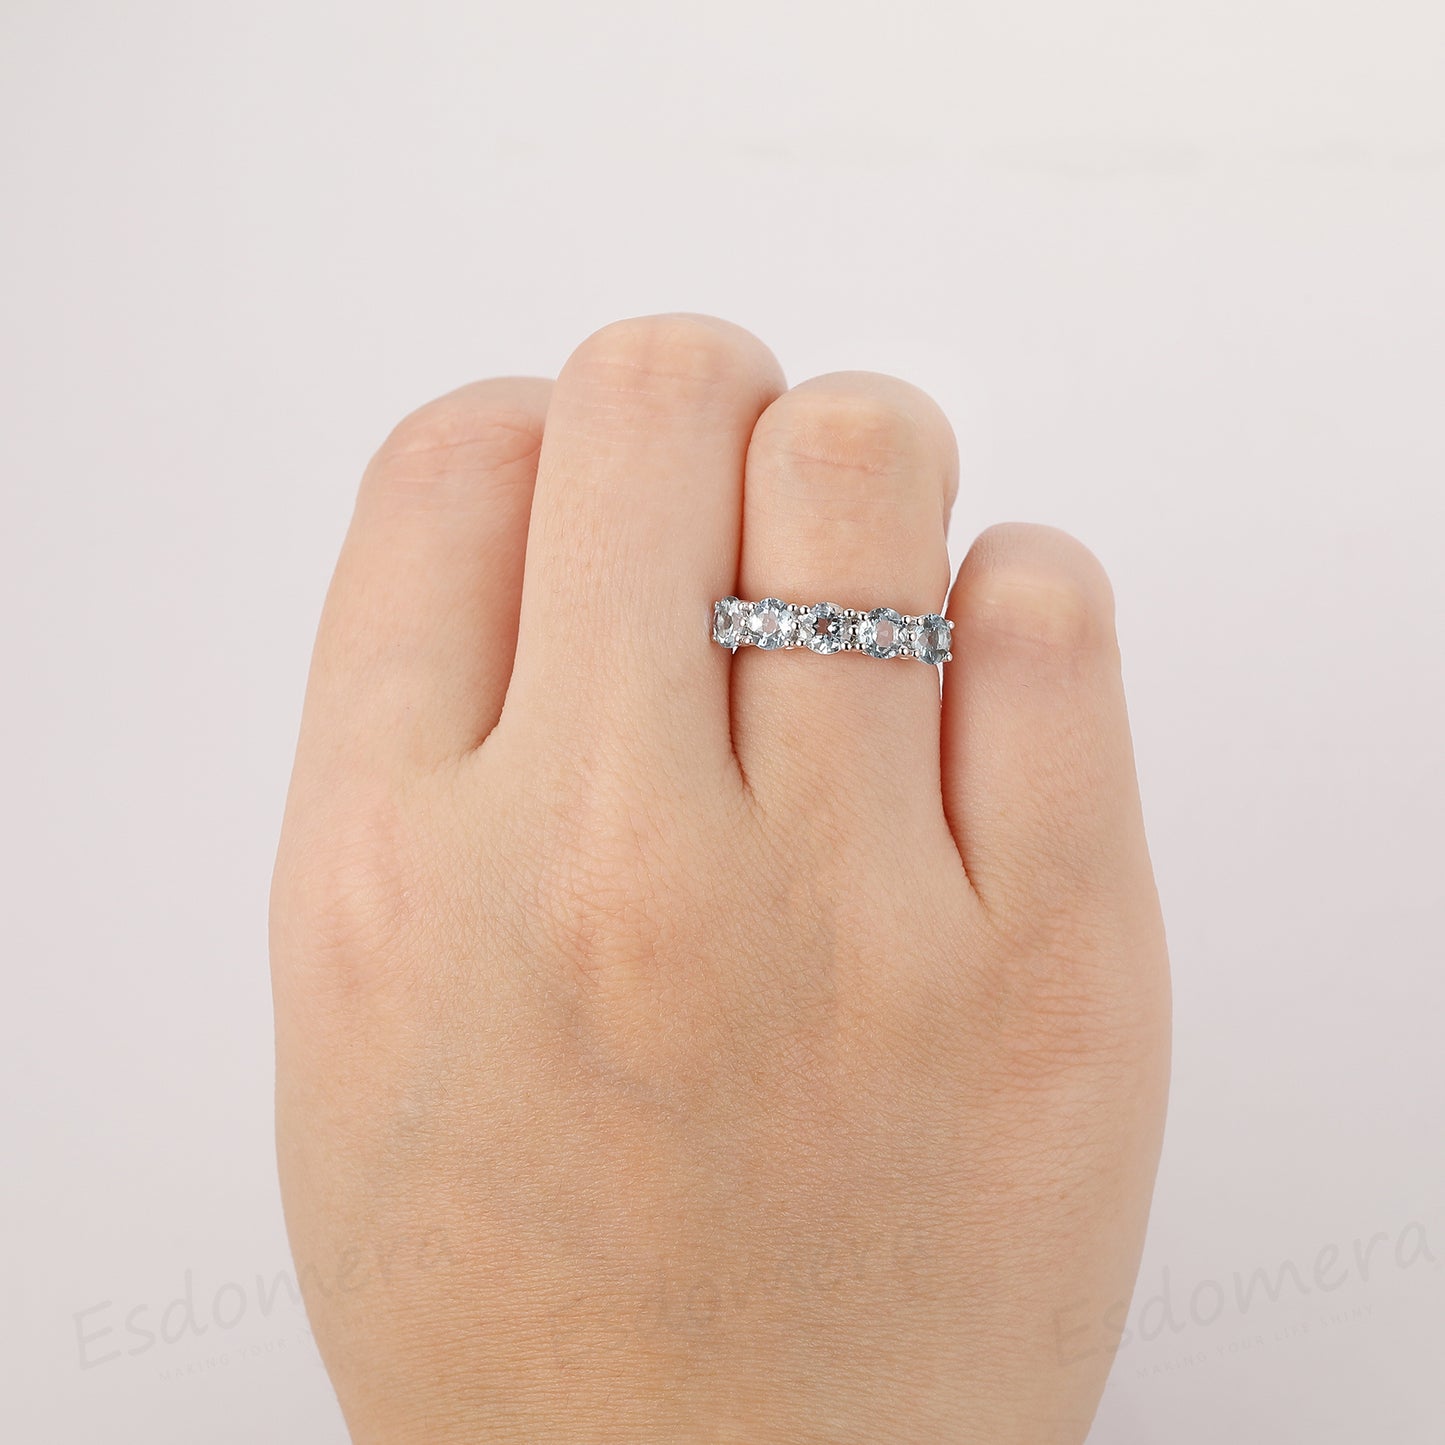 2ctw Round Aquamarine Engagement Ring, 14k White Gold 5 Stone Prong Setting Ring